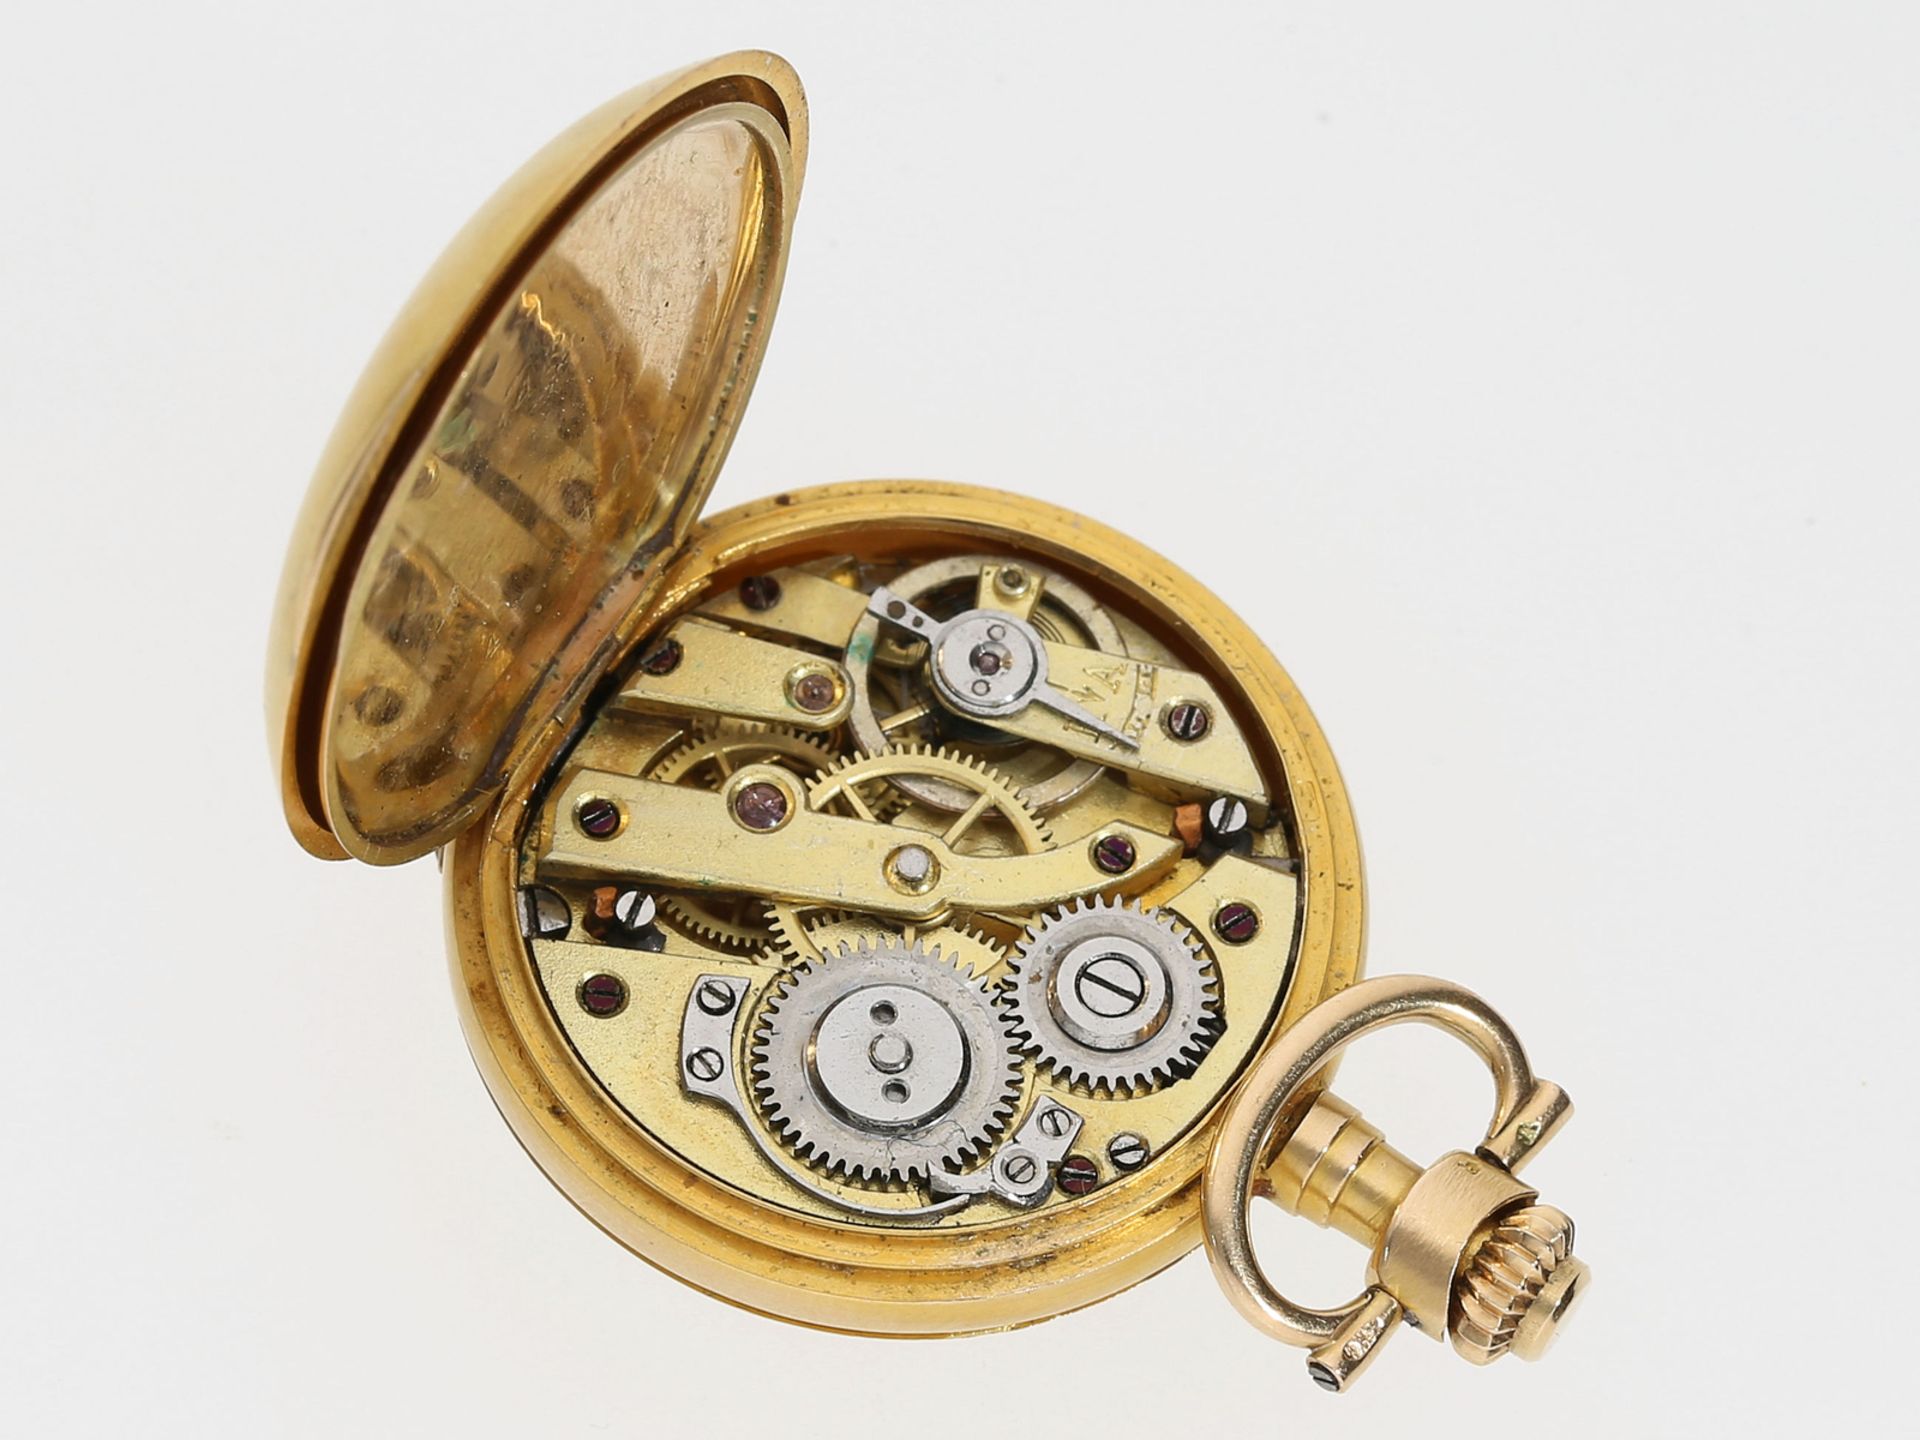 Taschenuhr/Anhängeuhr: Gold/Emaille-Damenuhr mit Diamantbesatz, Jugendstil um 1900 - Bild 4 aus 4